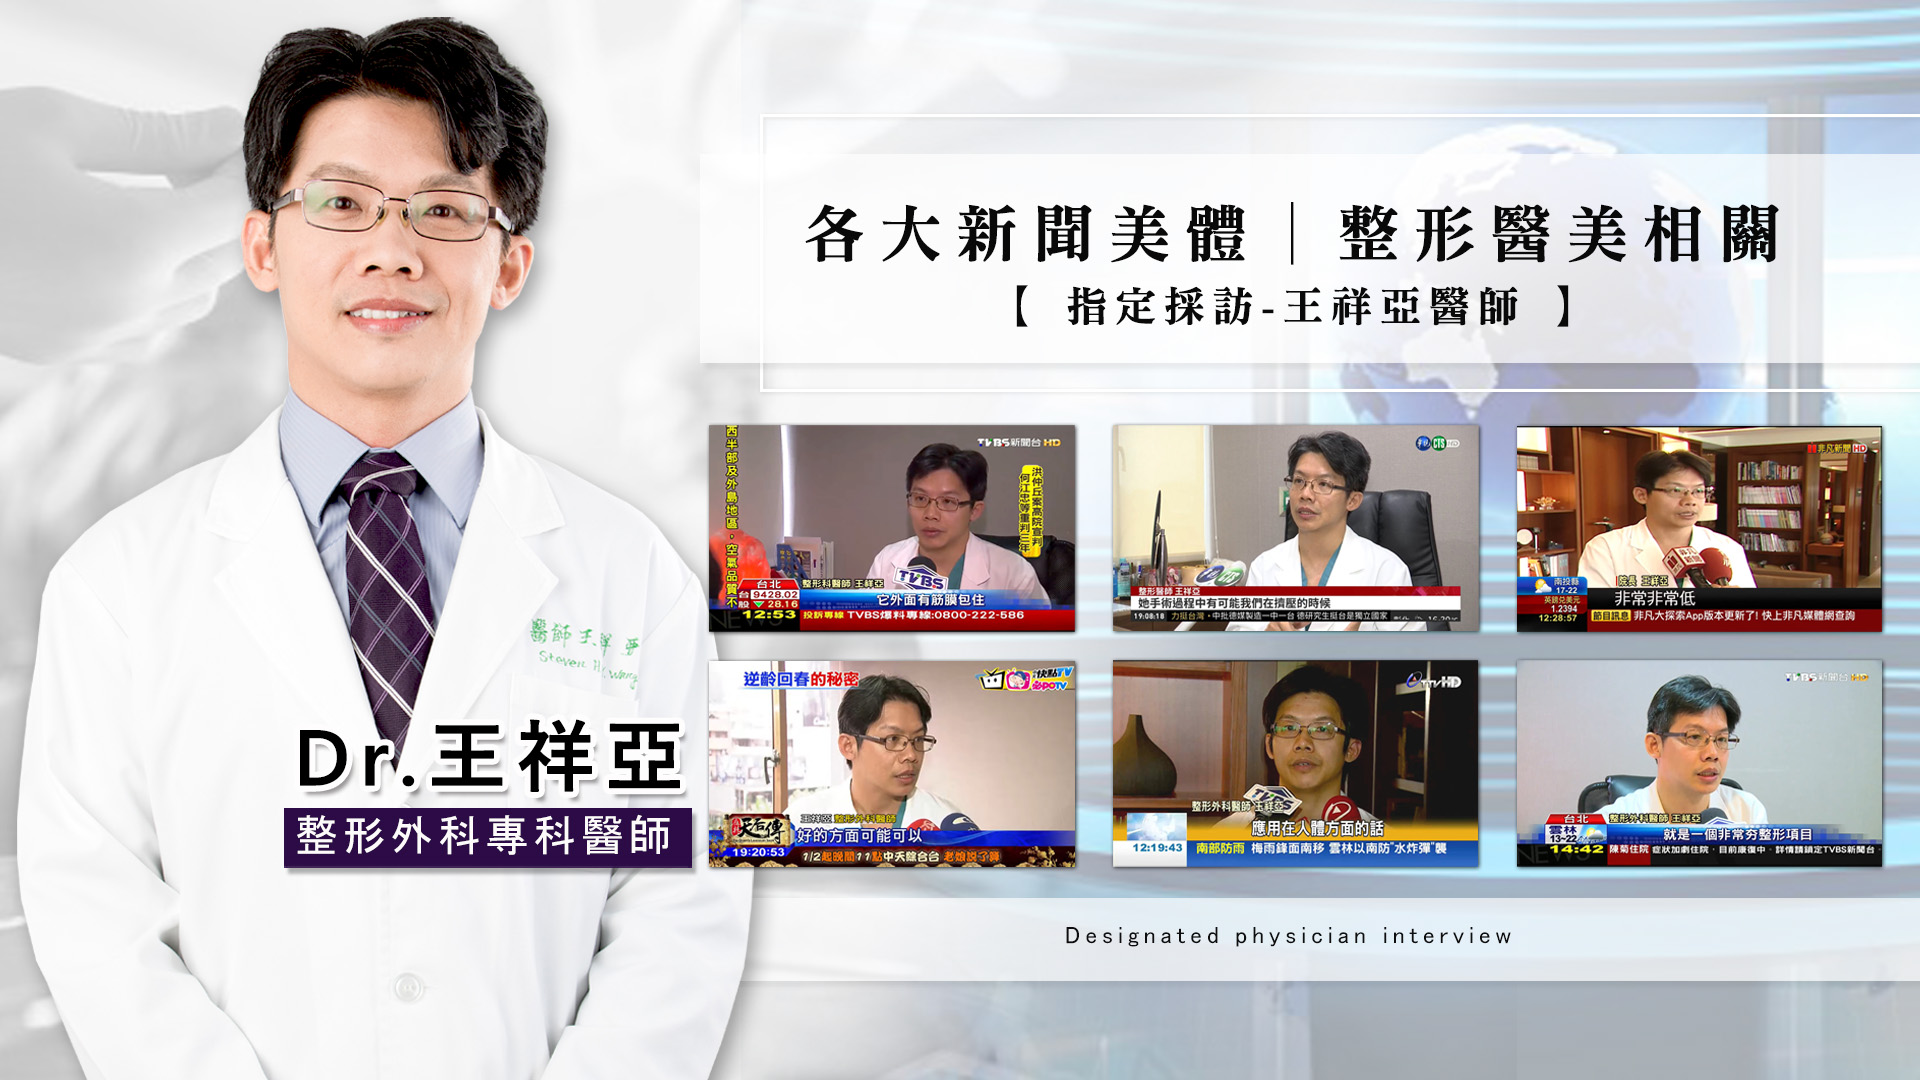 柔滴隆乳新聞媒體指定採訪權威王祥亞醫師